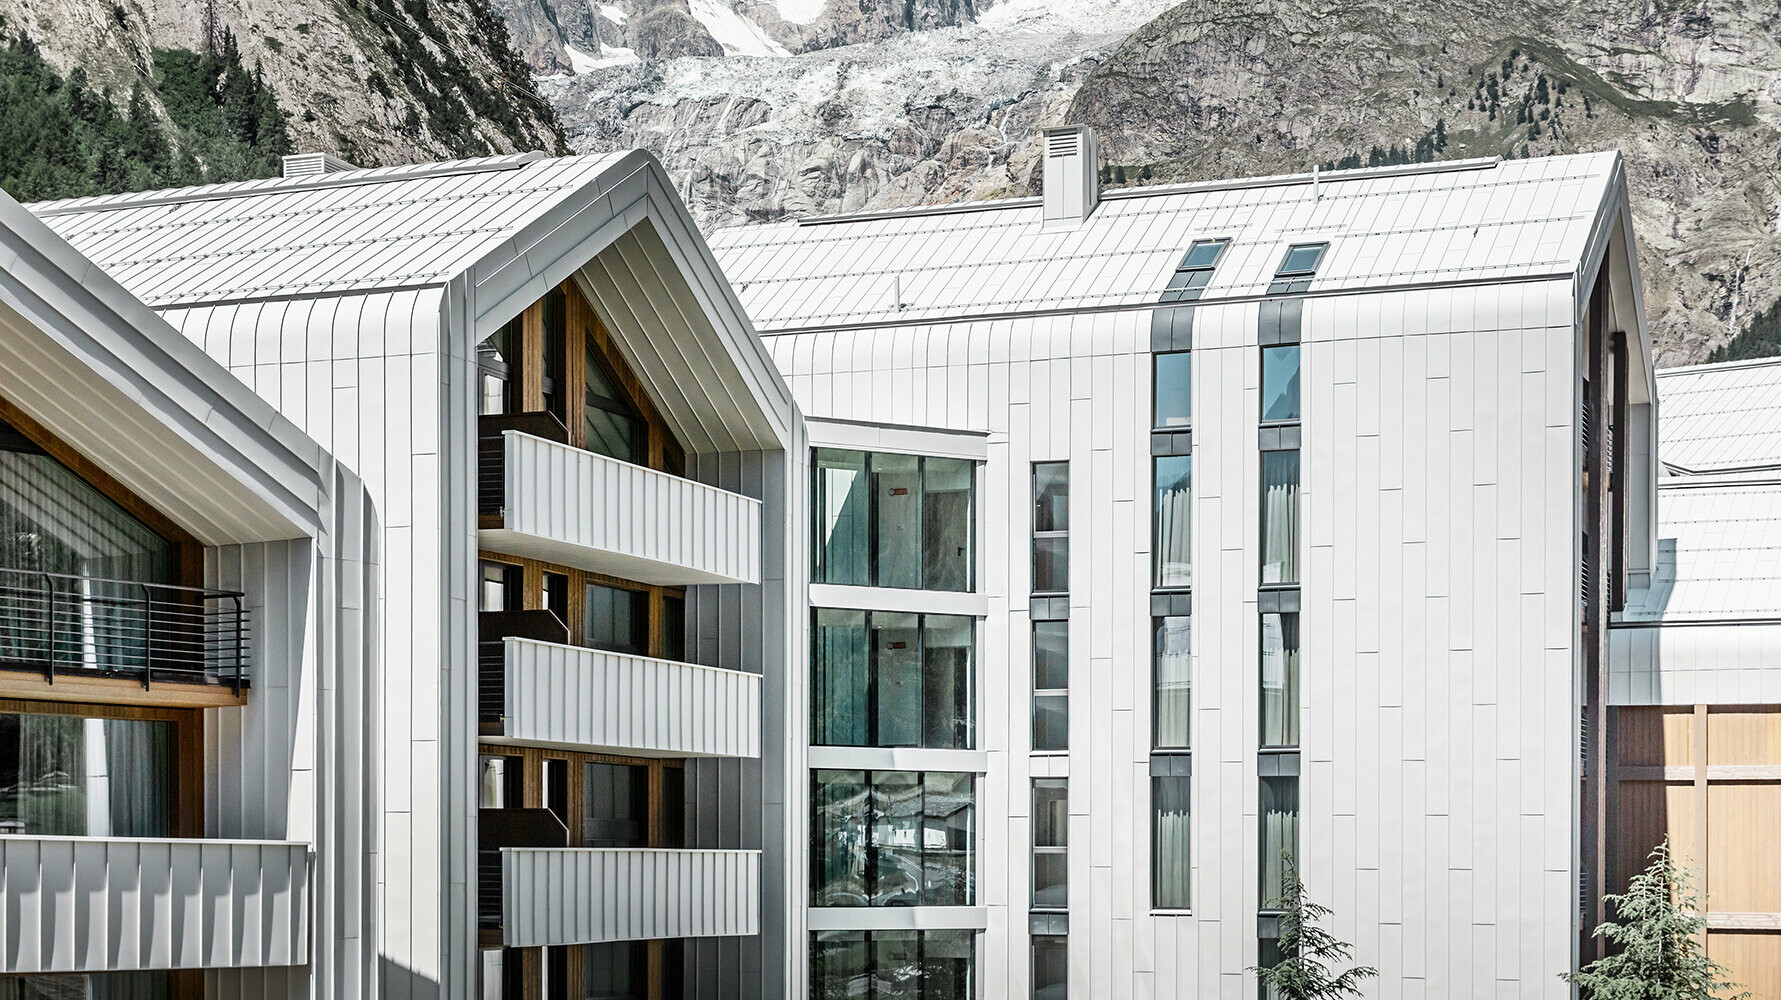 Neugebautes Hotel in Italien mit PREFALZ Dach- und Fassadenverkleidung in den Farben Weiß und Anthrazit